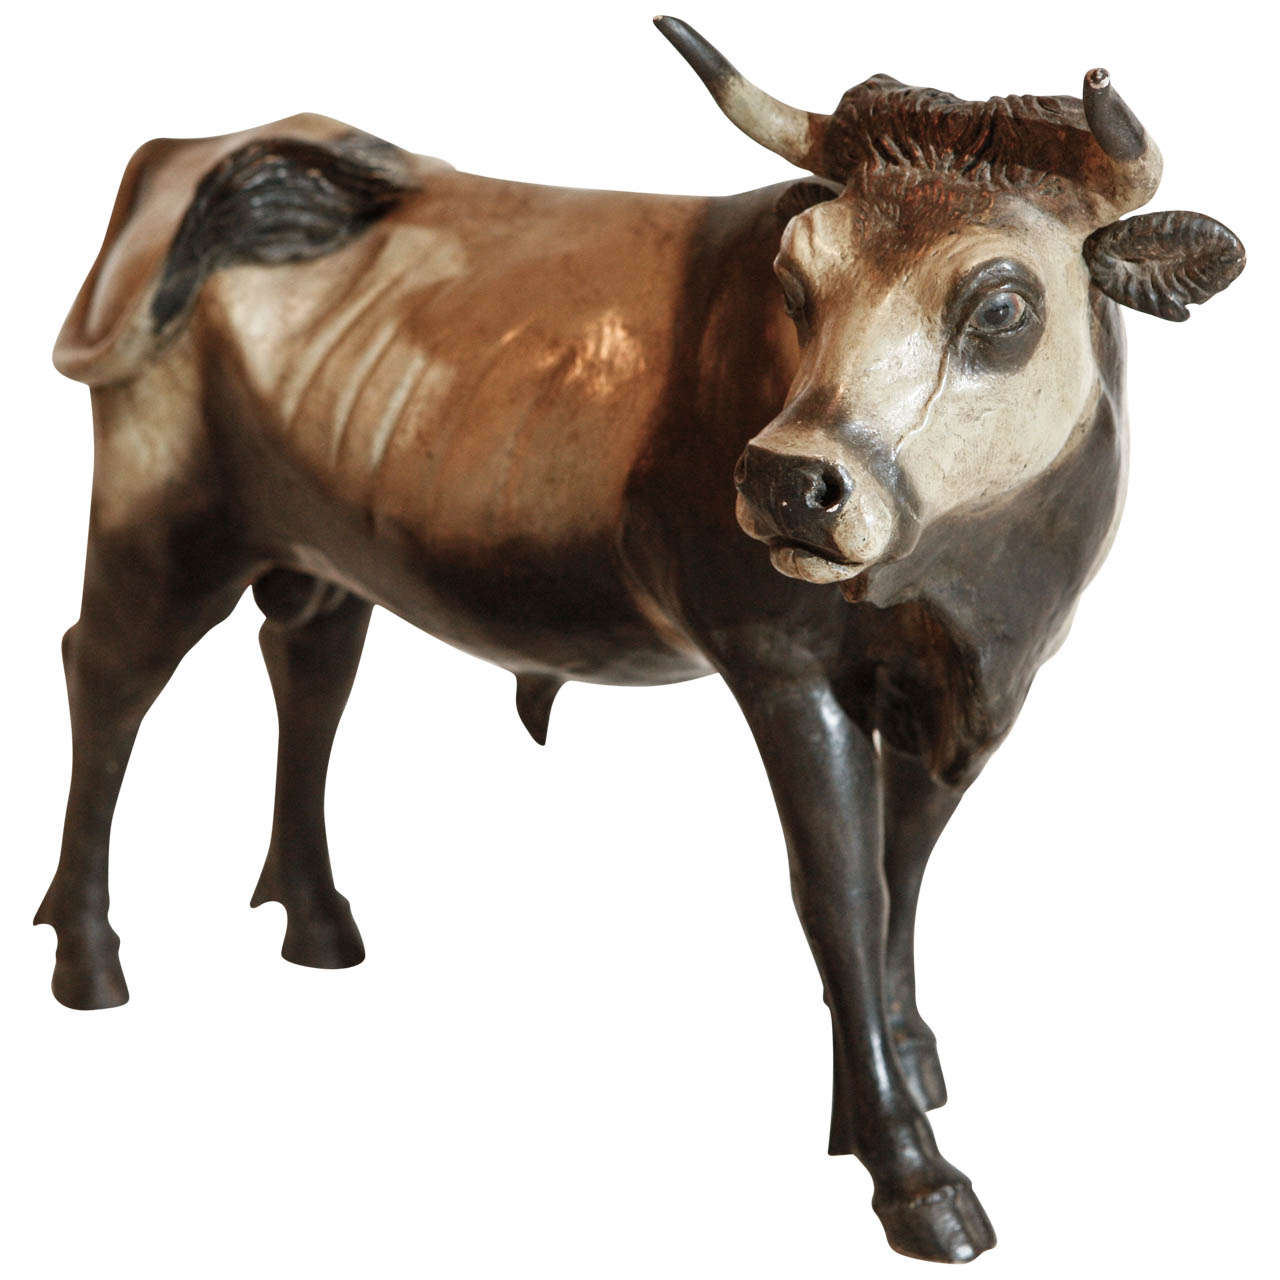 Hand-Painted 19th Century Bull Figurine